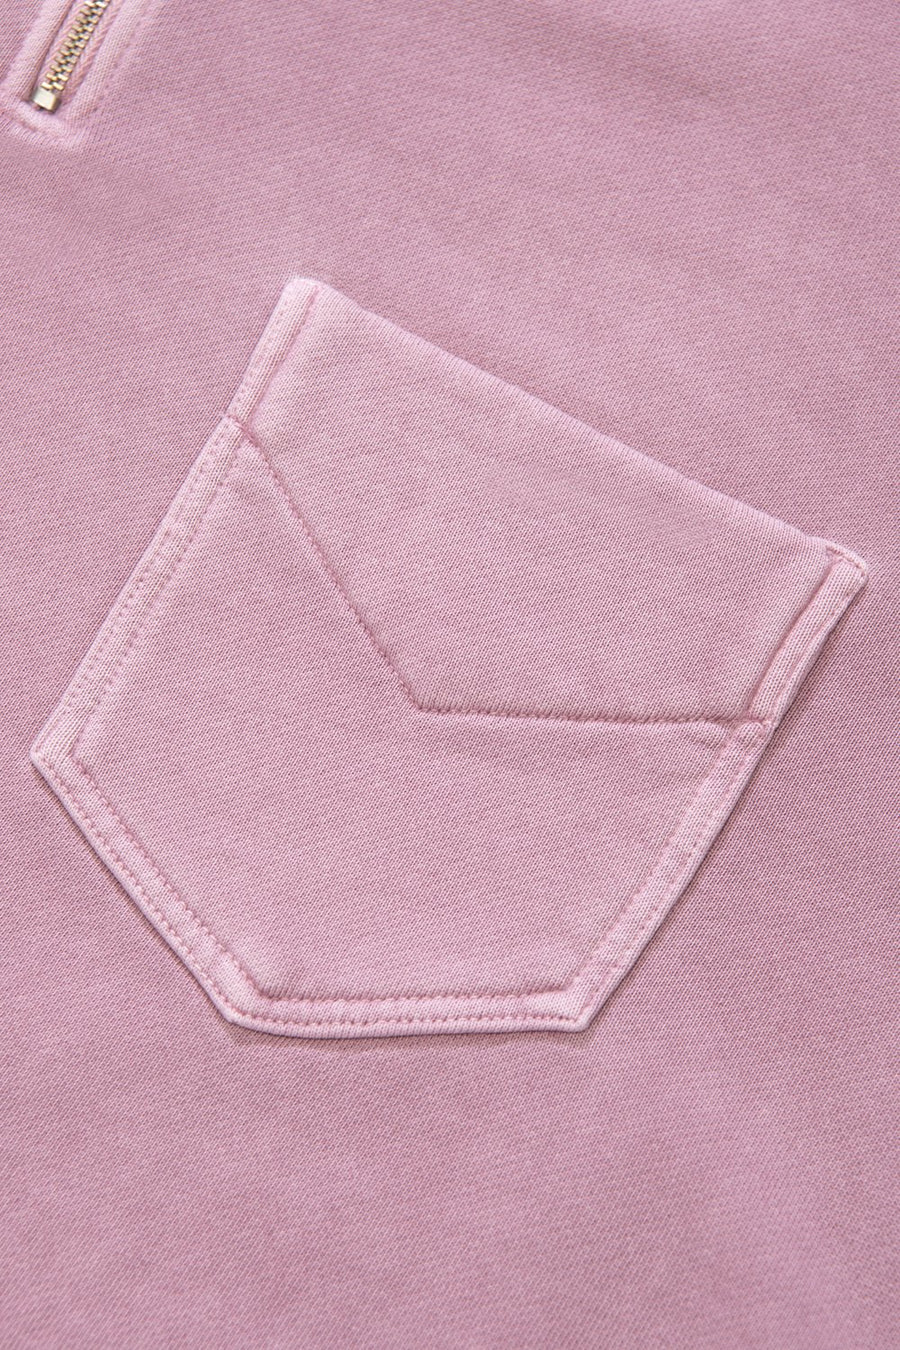 1/4 QUARTER Zip SWEATSHIRT Pocket Clay Pink